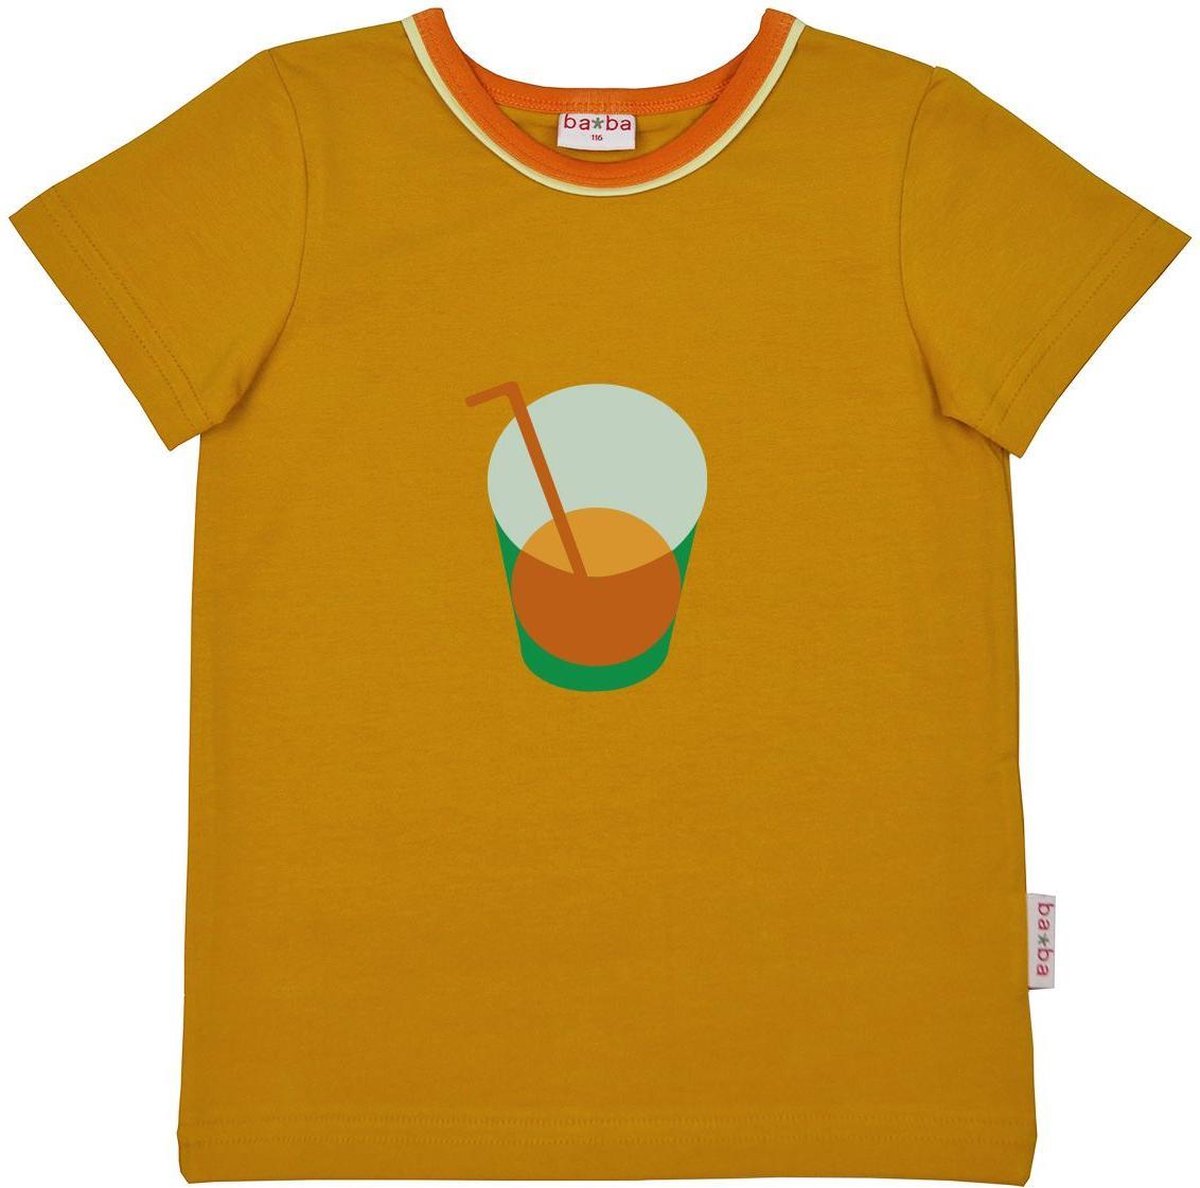 BA*BA Kidswear T-shirt Chai Tea Maat 128